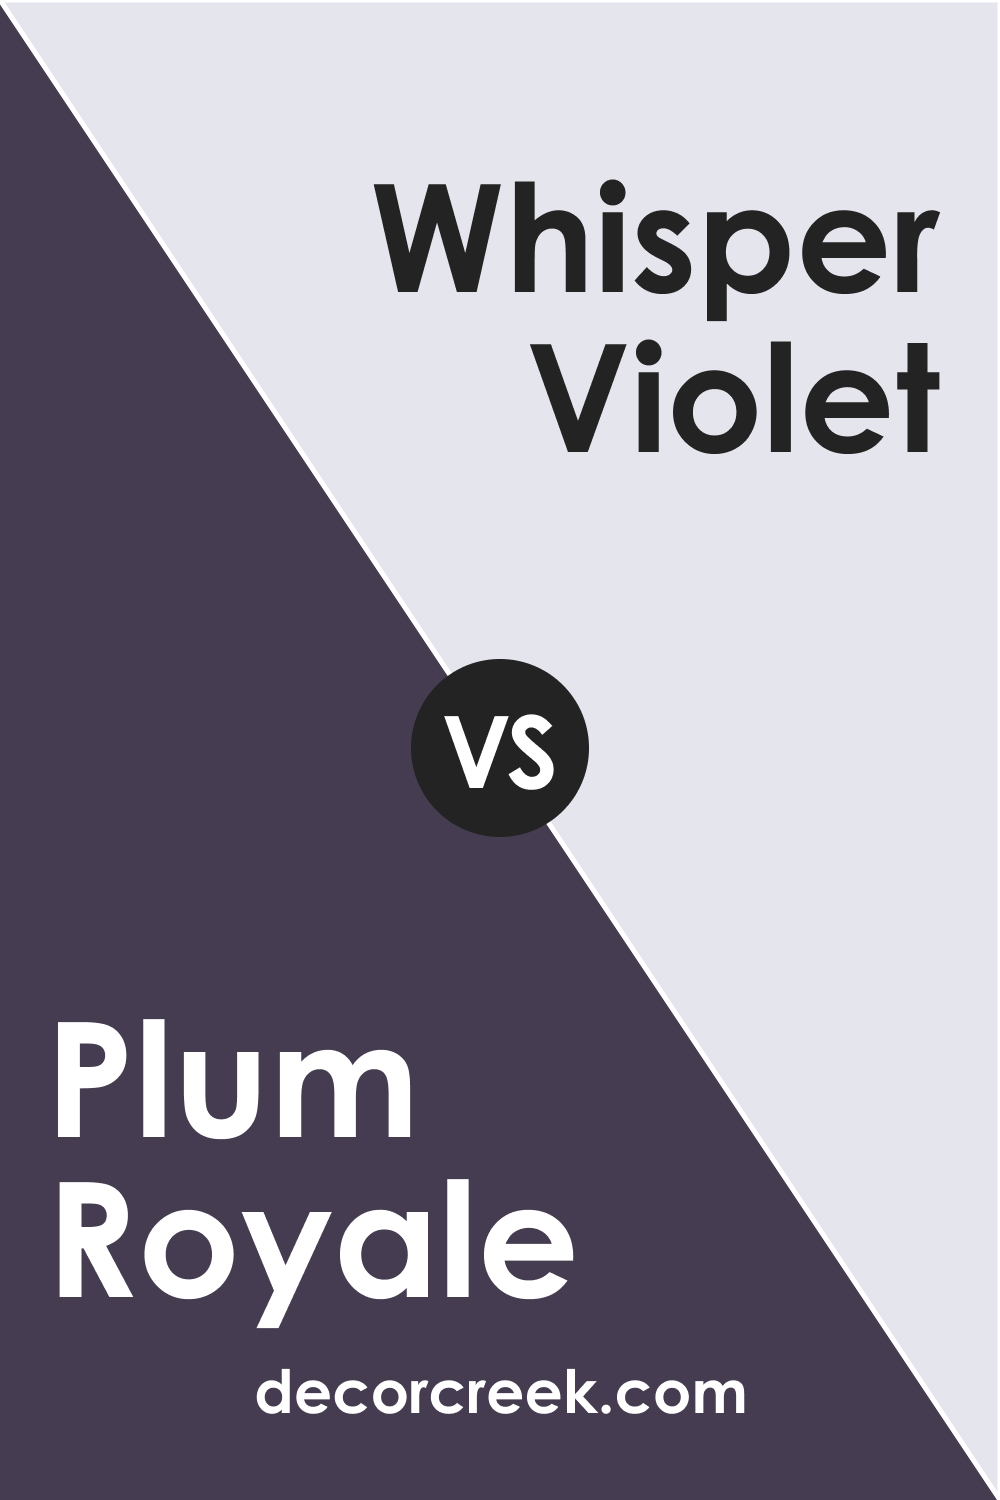 Plum Royale 2070-20 vs. BM 2070-70 Whisper Violet